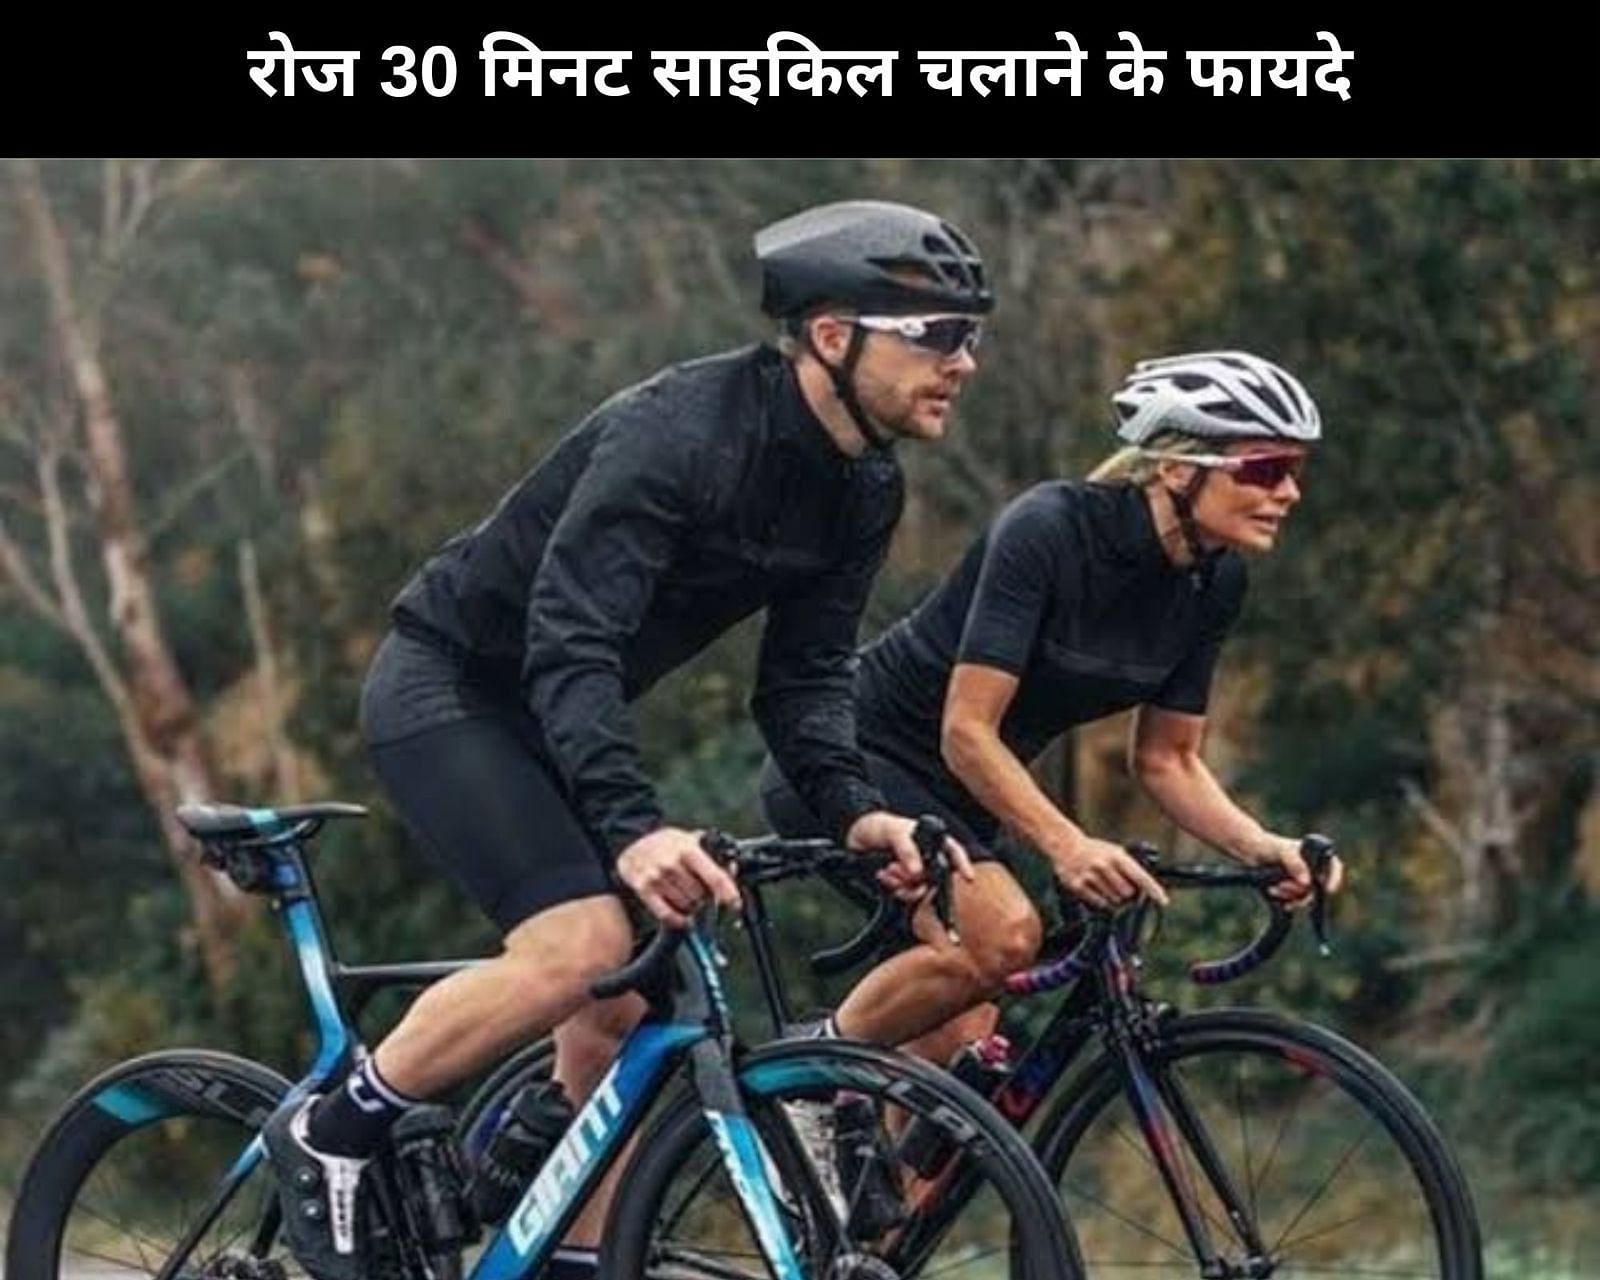 रोज 30 मिनट साइकिल चलाने के फायदे (sportskeeda Hindi) 